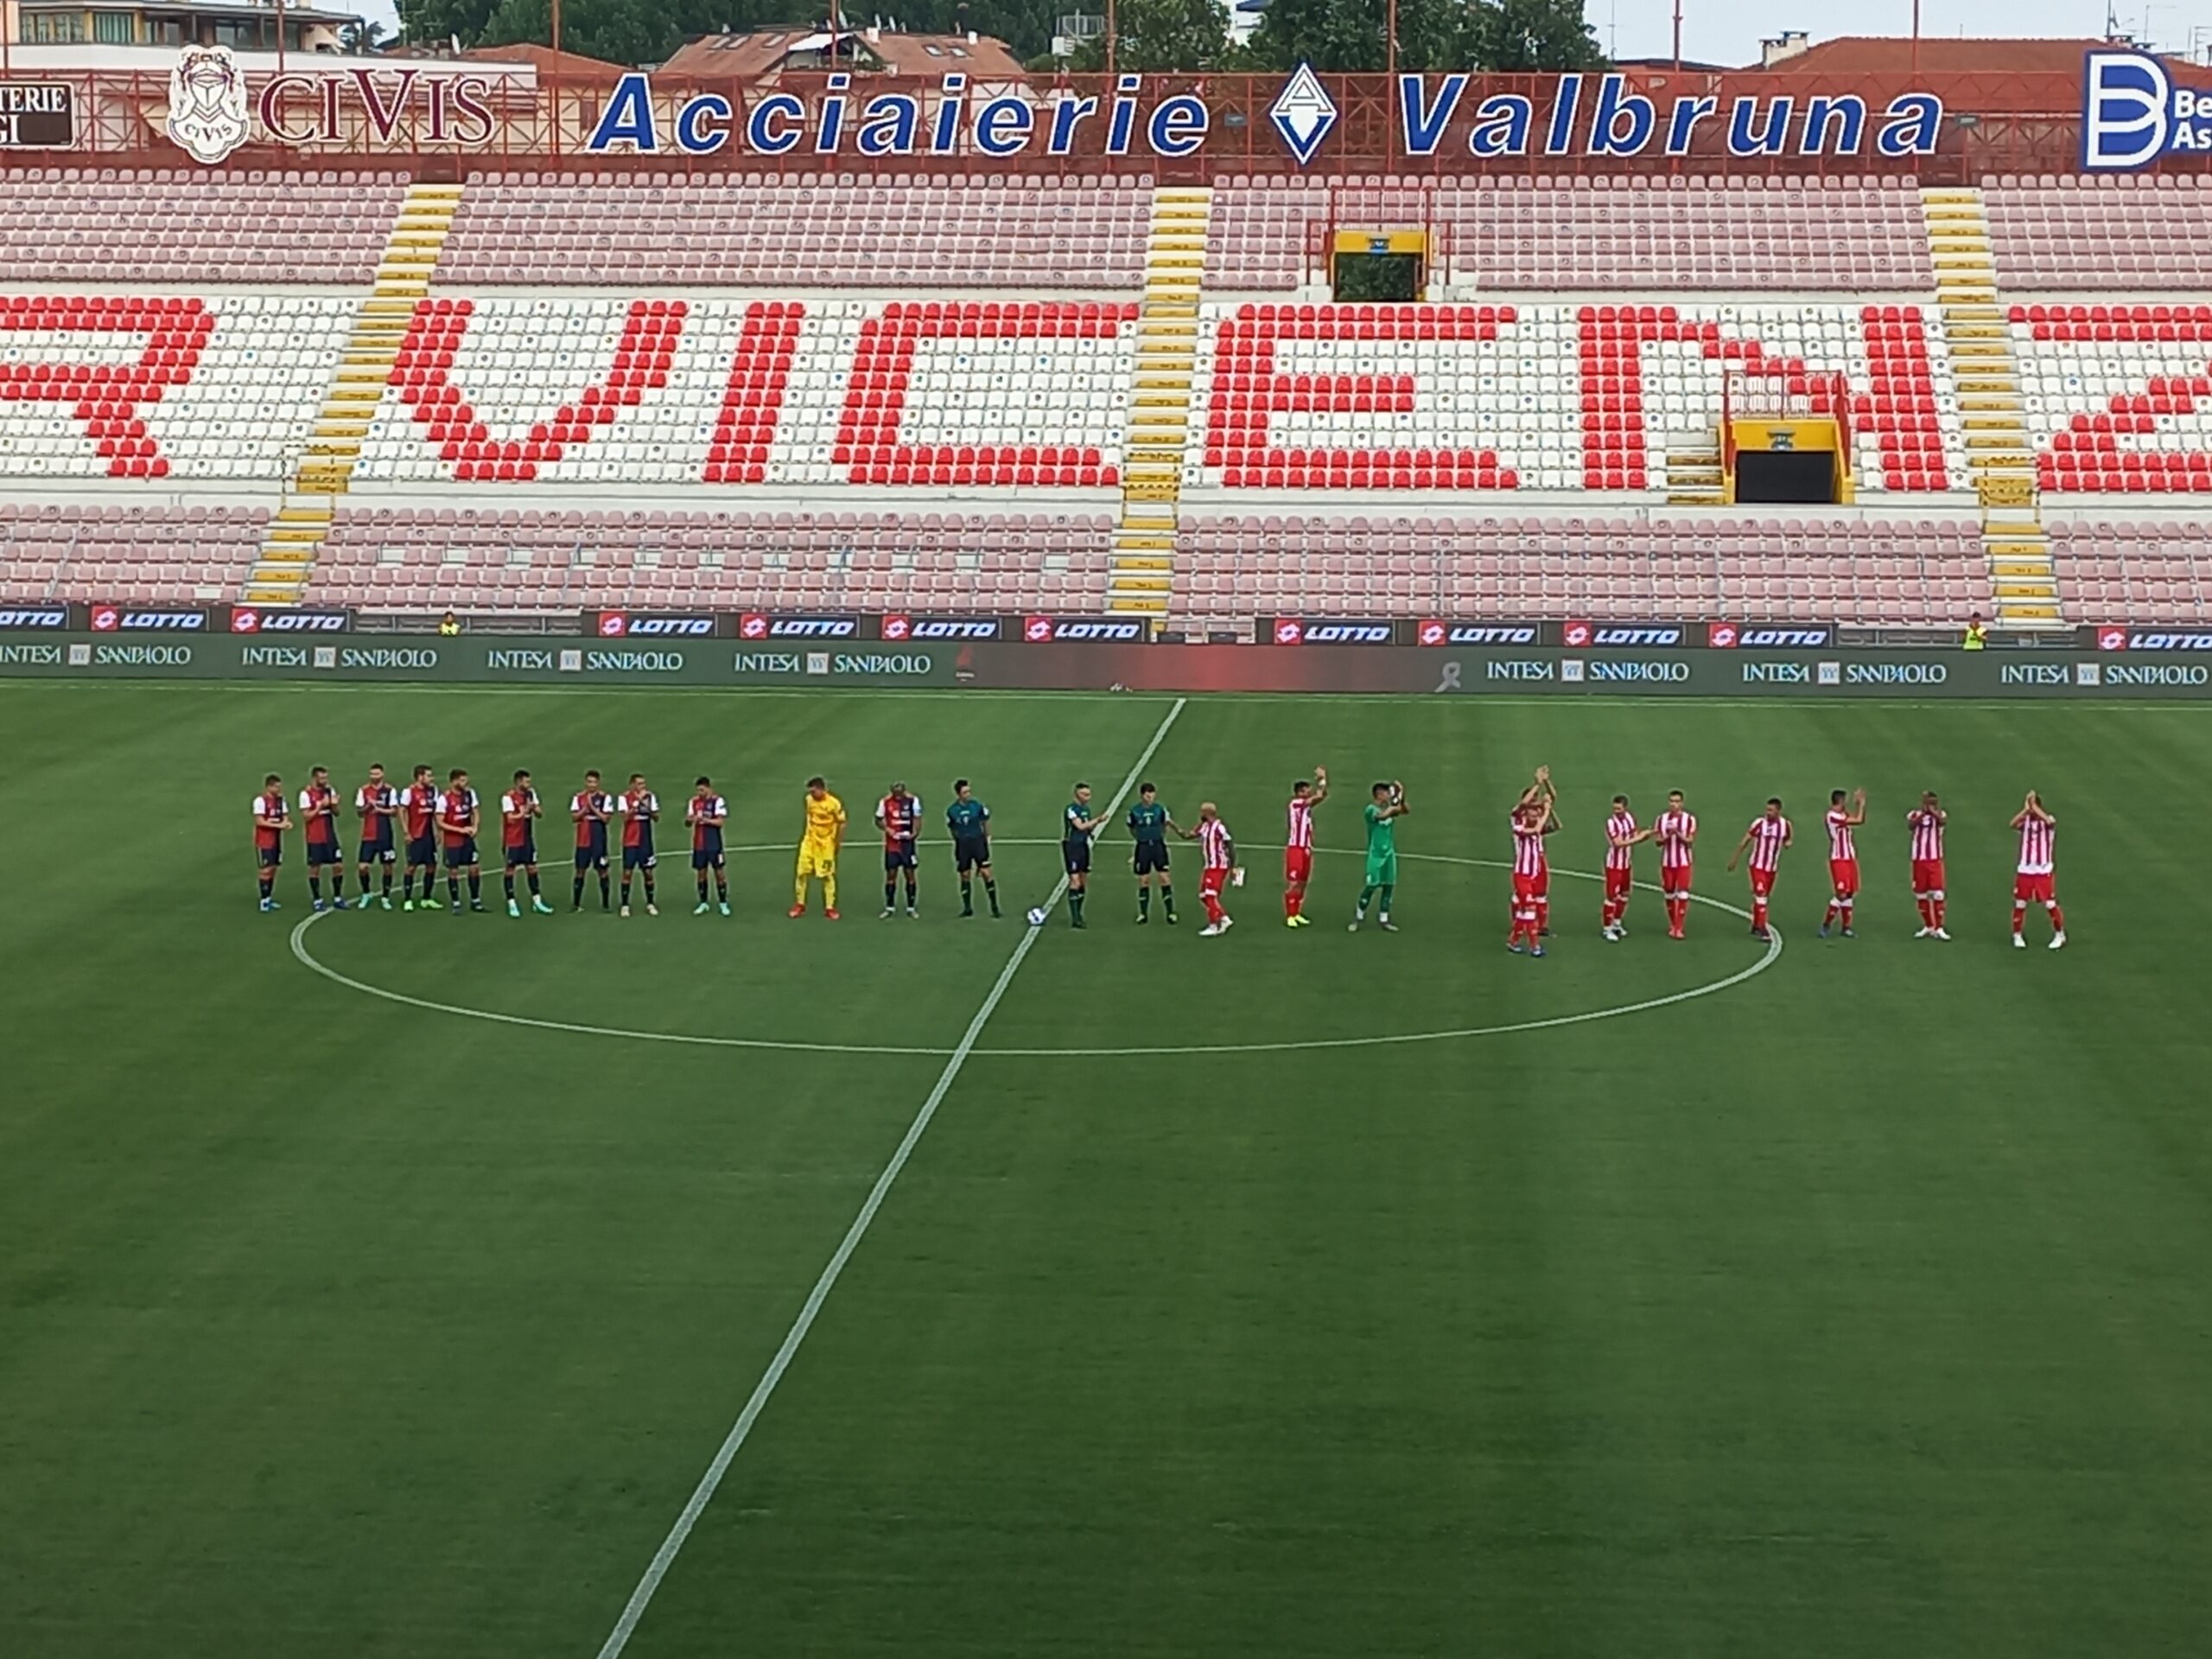 L.R. Vicenza-Cagliari: 0-3 (amichevole)